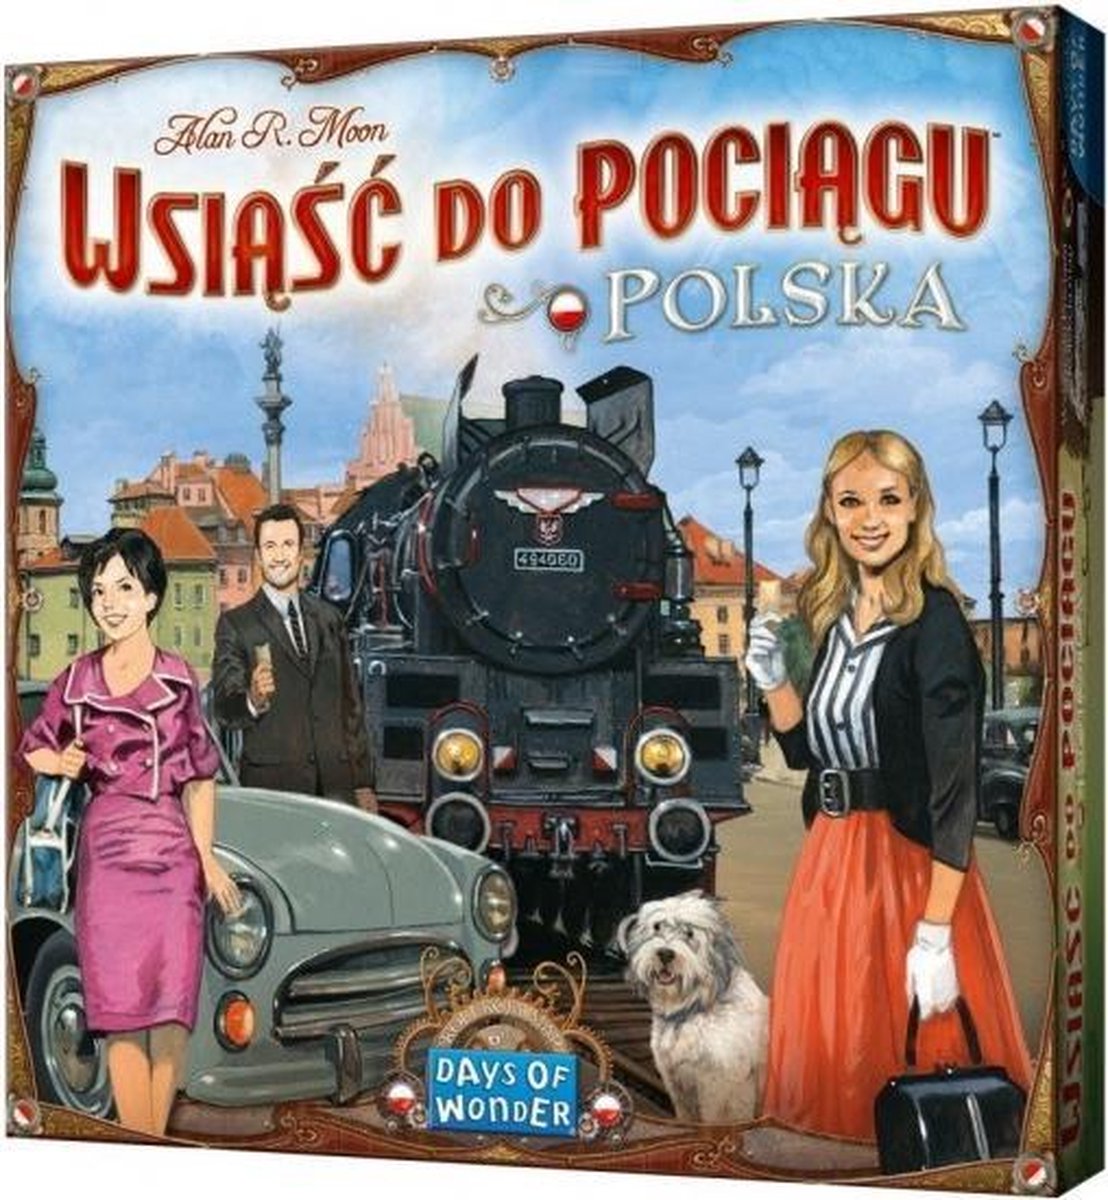 uitbreiding bordspel Ticket to Ride - Polen (pl)